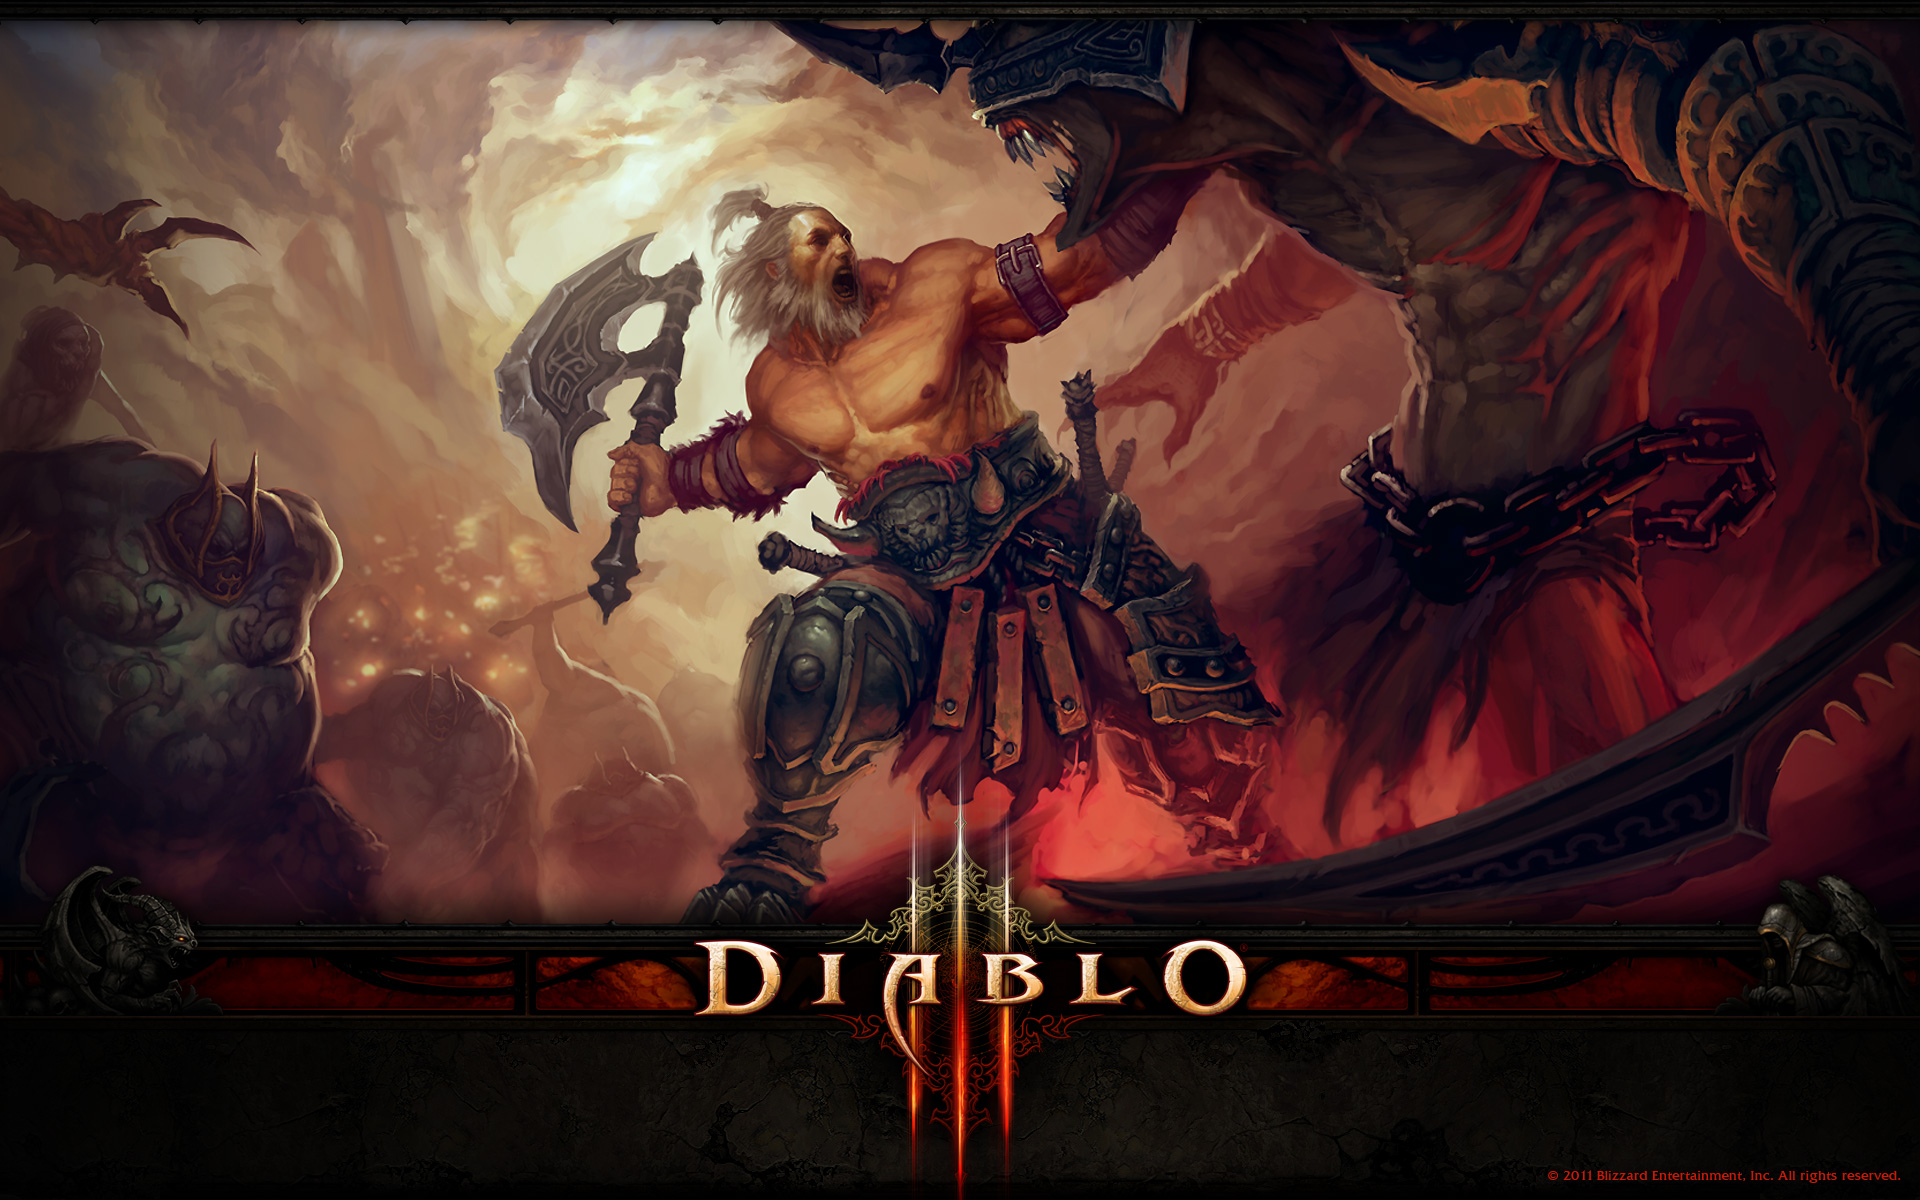 Wallpapers - Media - Diablo III